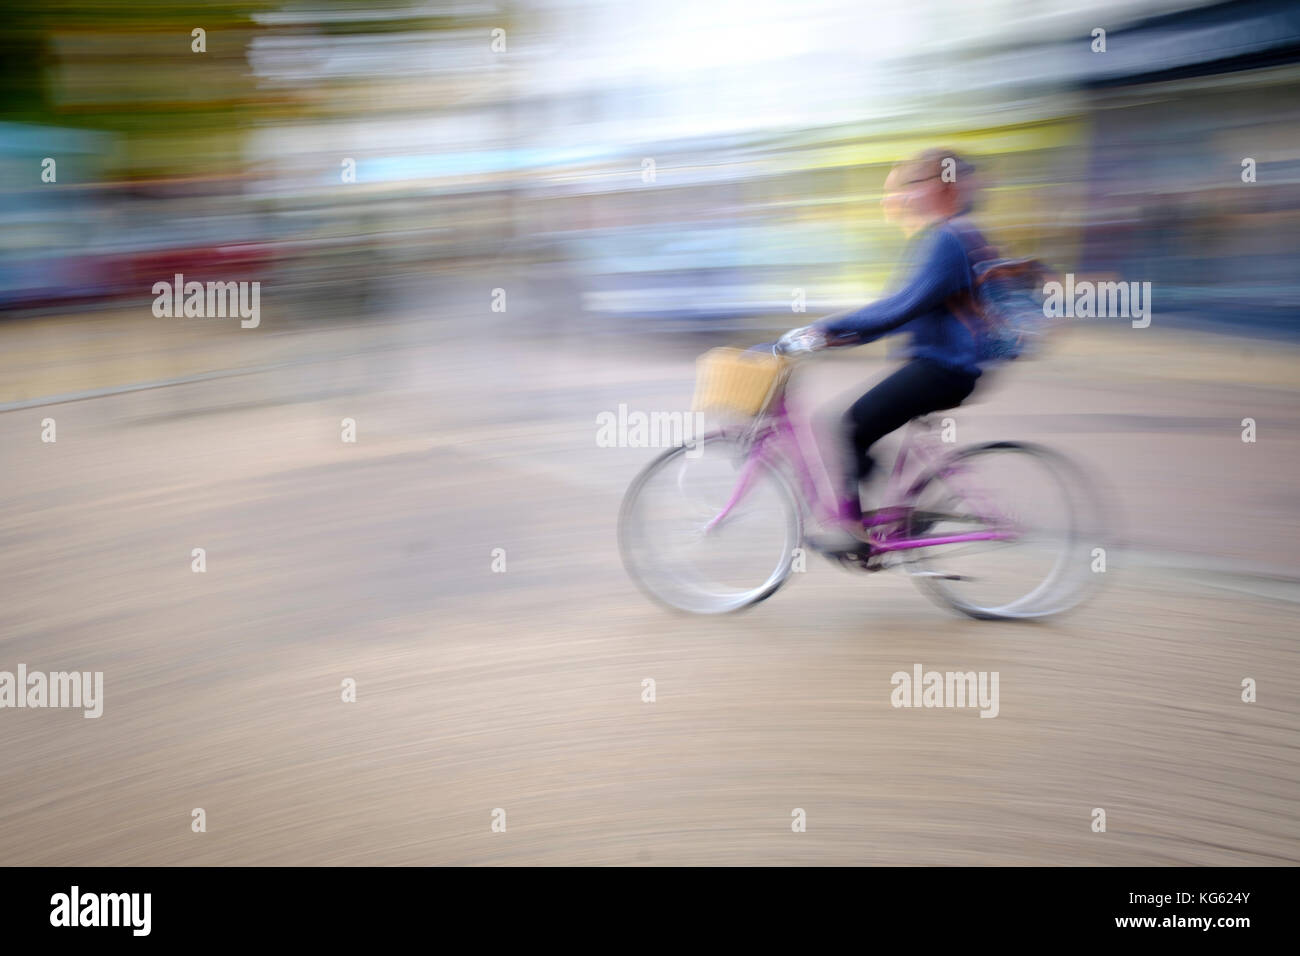 Randonnée à vélo dans la région de Cambridge caméra intentionnelle de flou à donner la sensation de vitesse et d'un style impressionniste de droit Banque D'Images